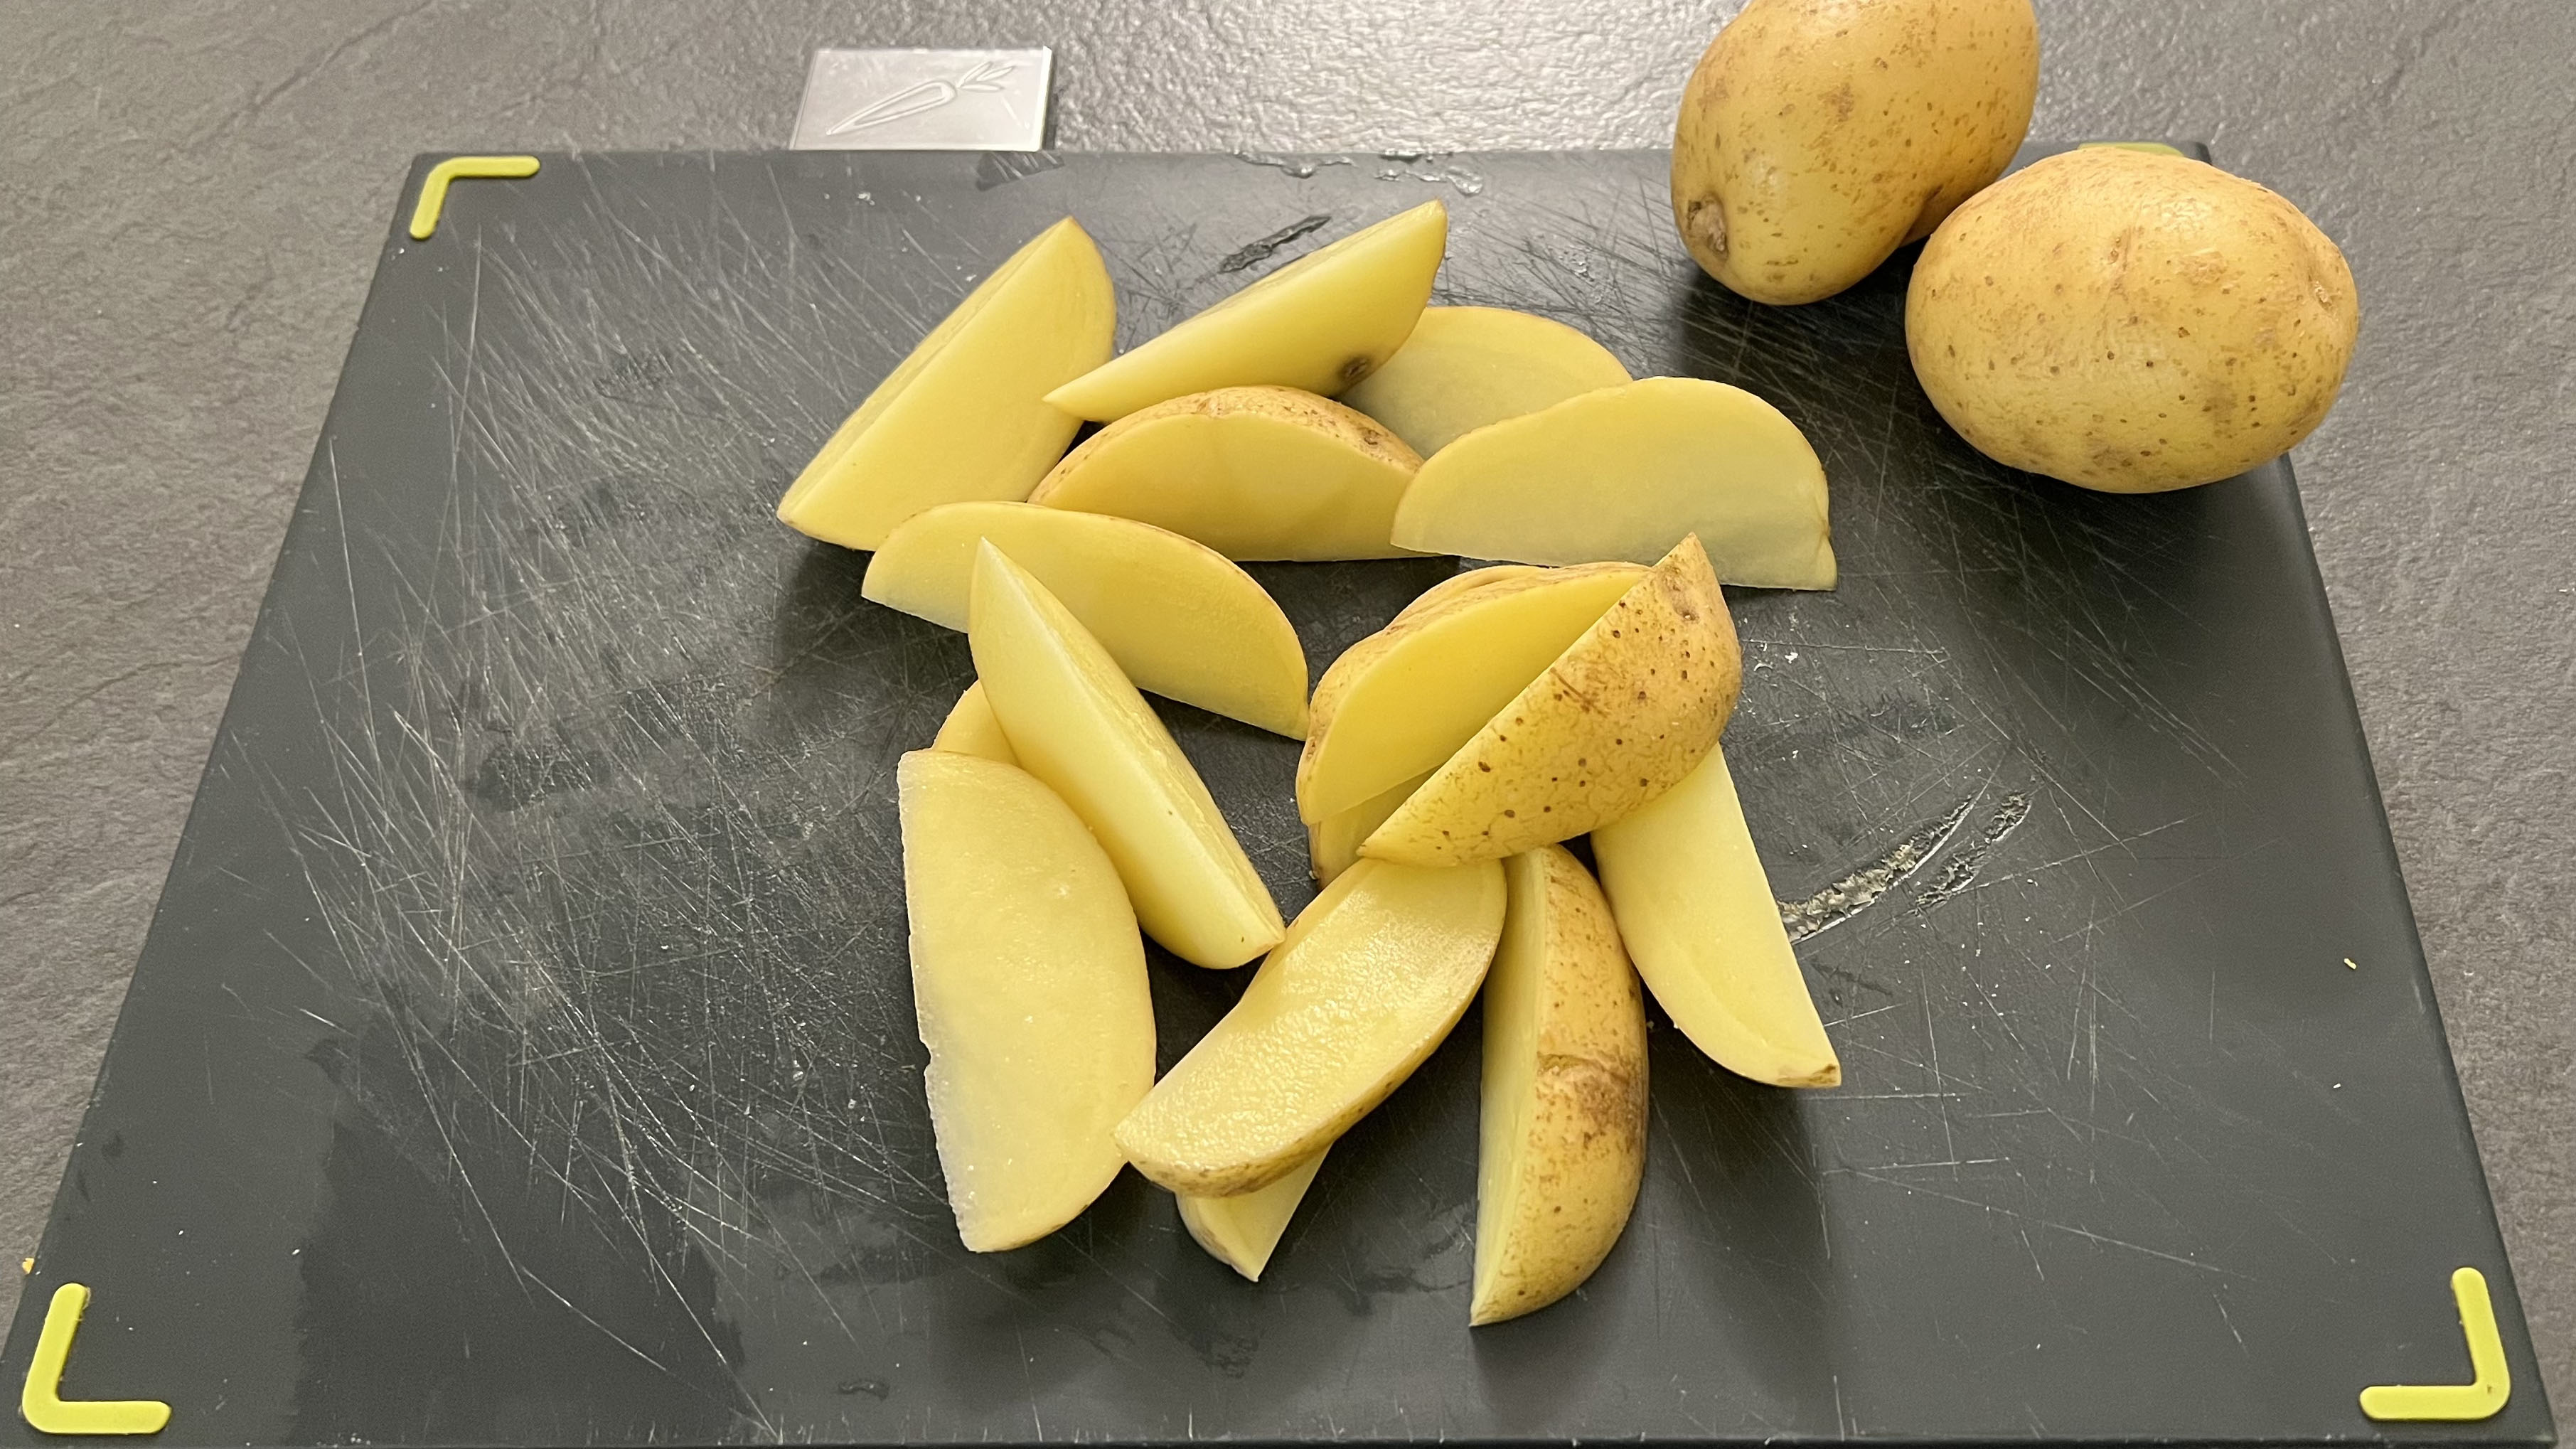 Wedge chopped potatoes on a cutting board